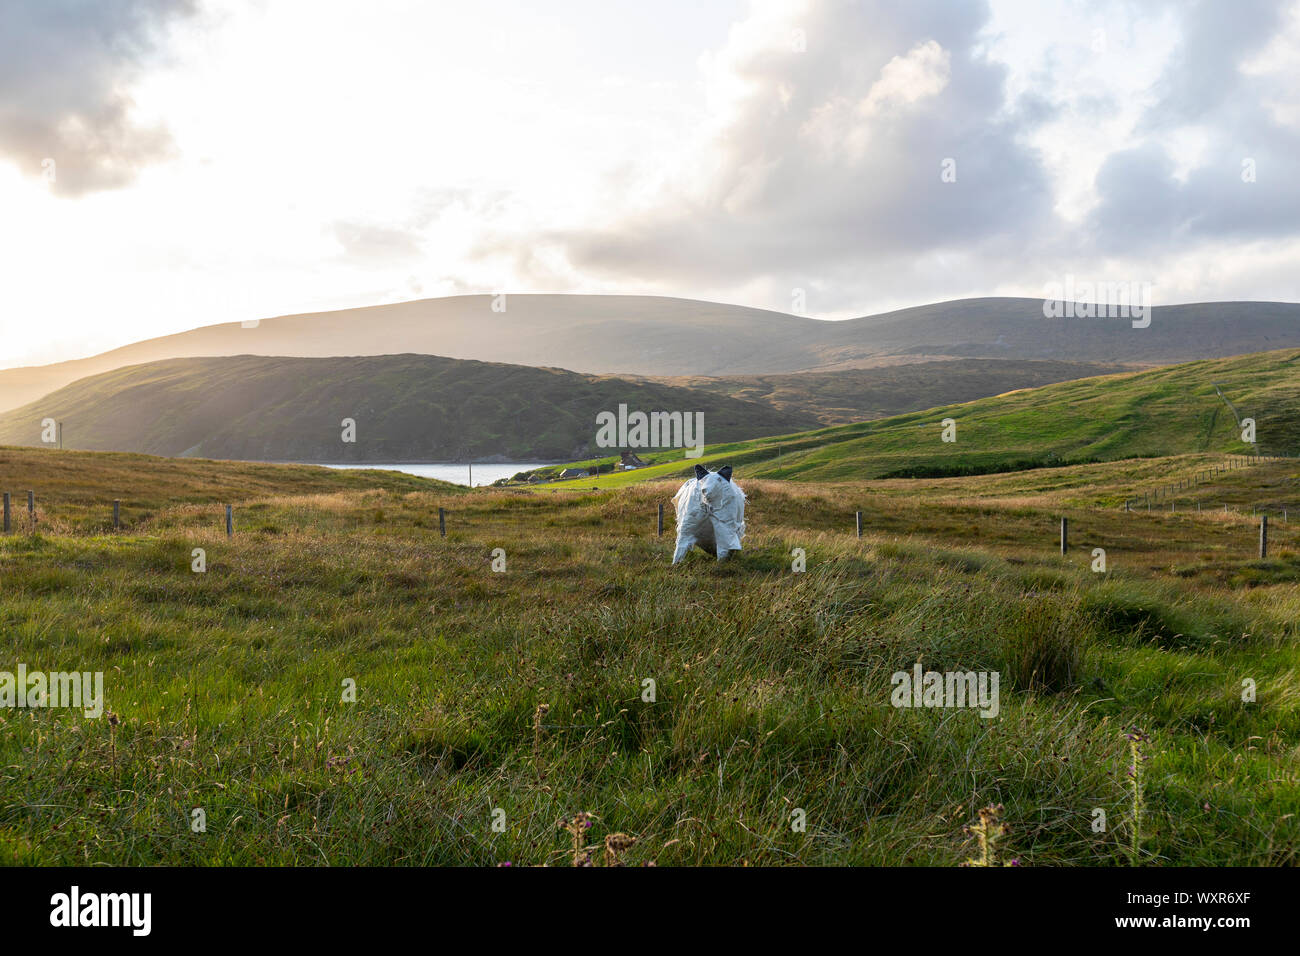 Maquette de vache dans un champ en continent, Shetland, Scotland, UK Banque D'Images